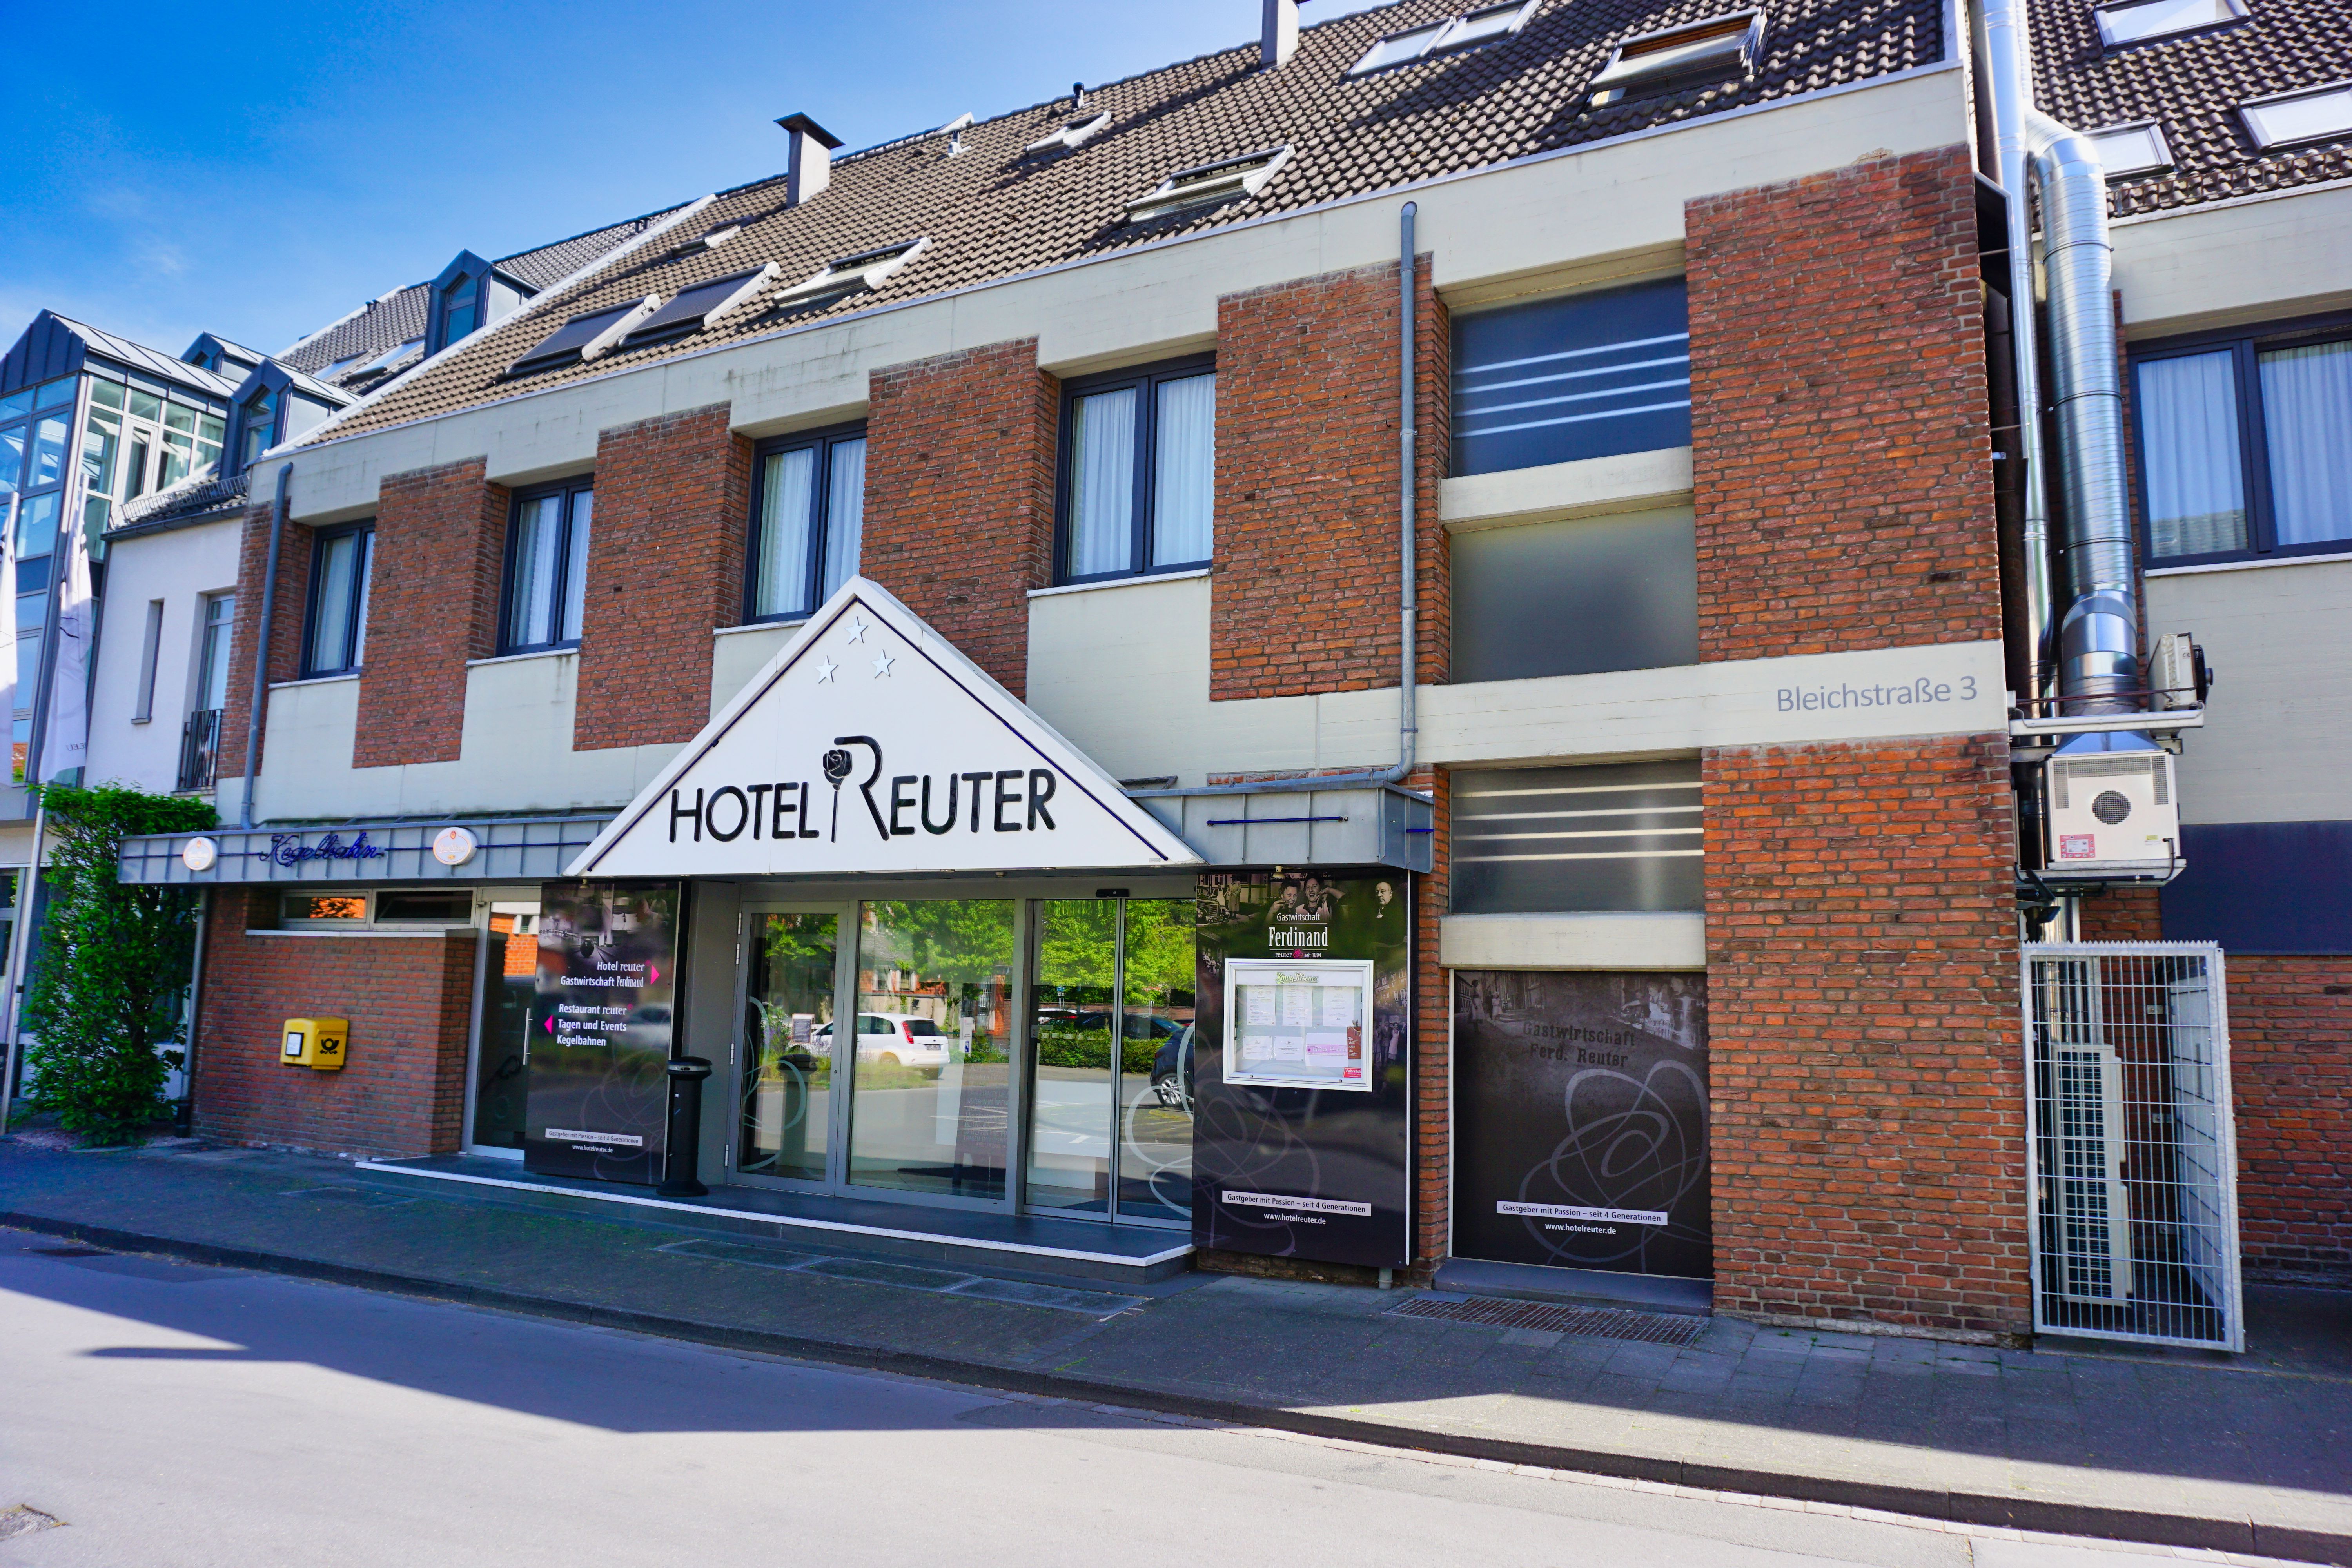 Hotel Reuter, Rheda-Wiedenbrück.
